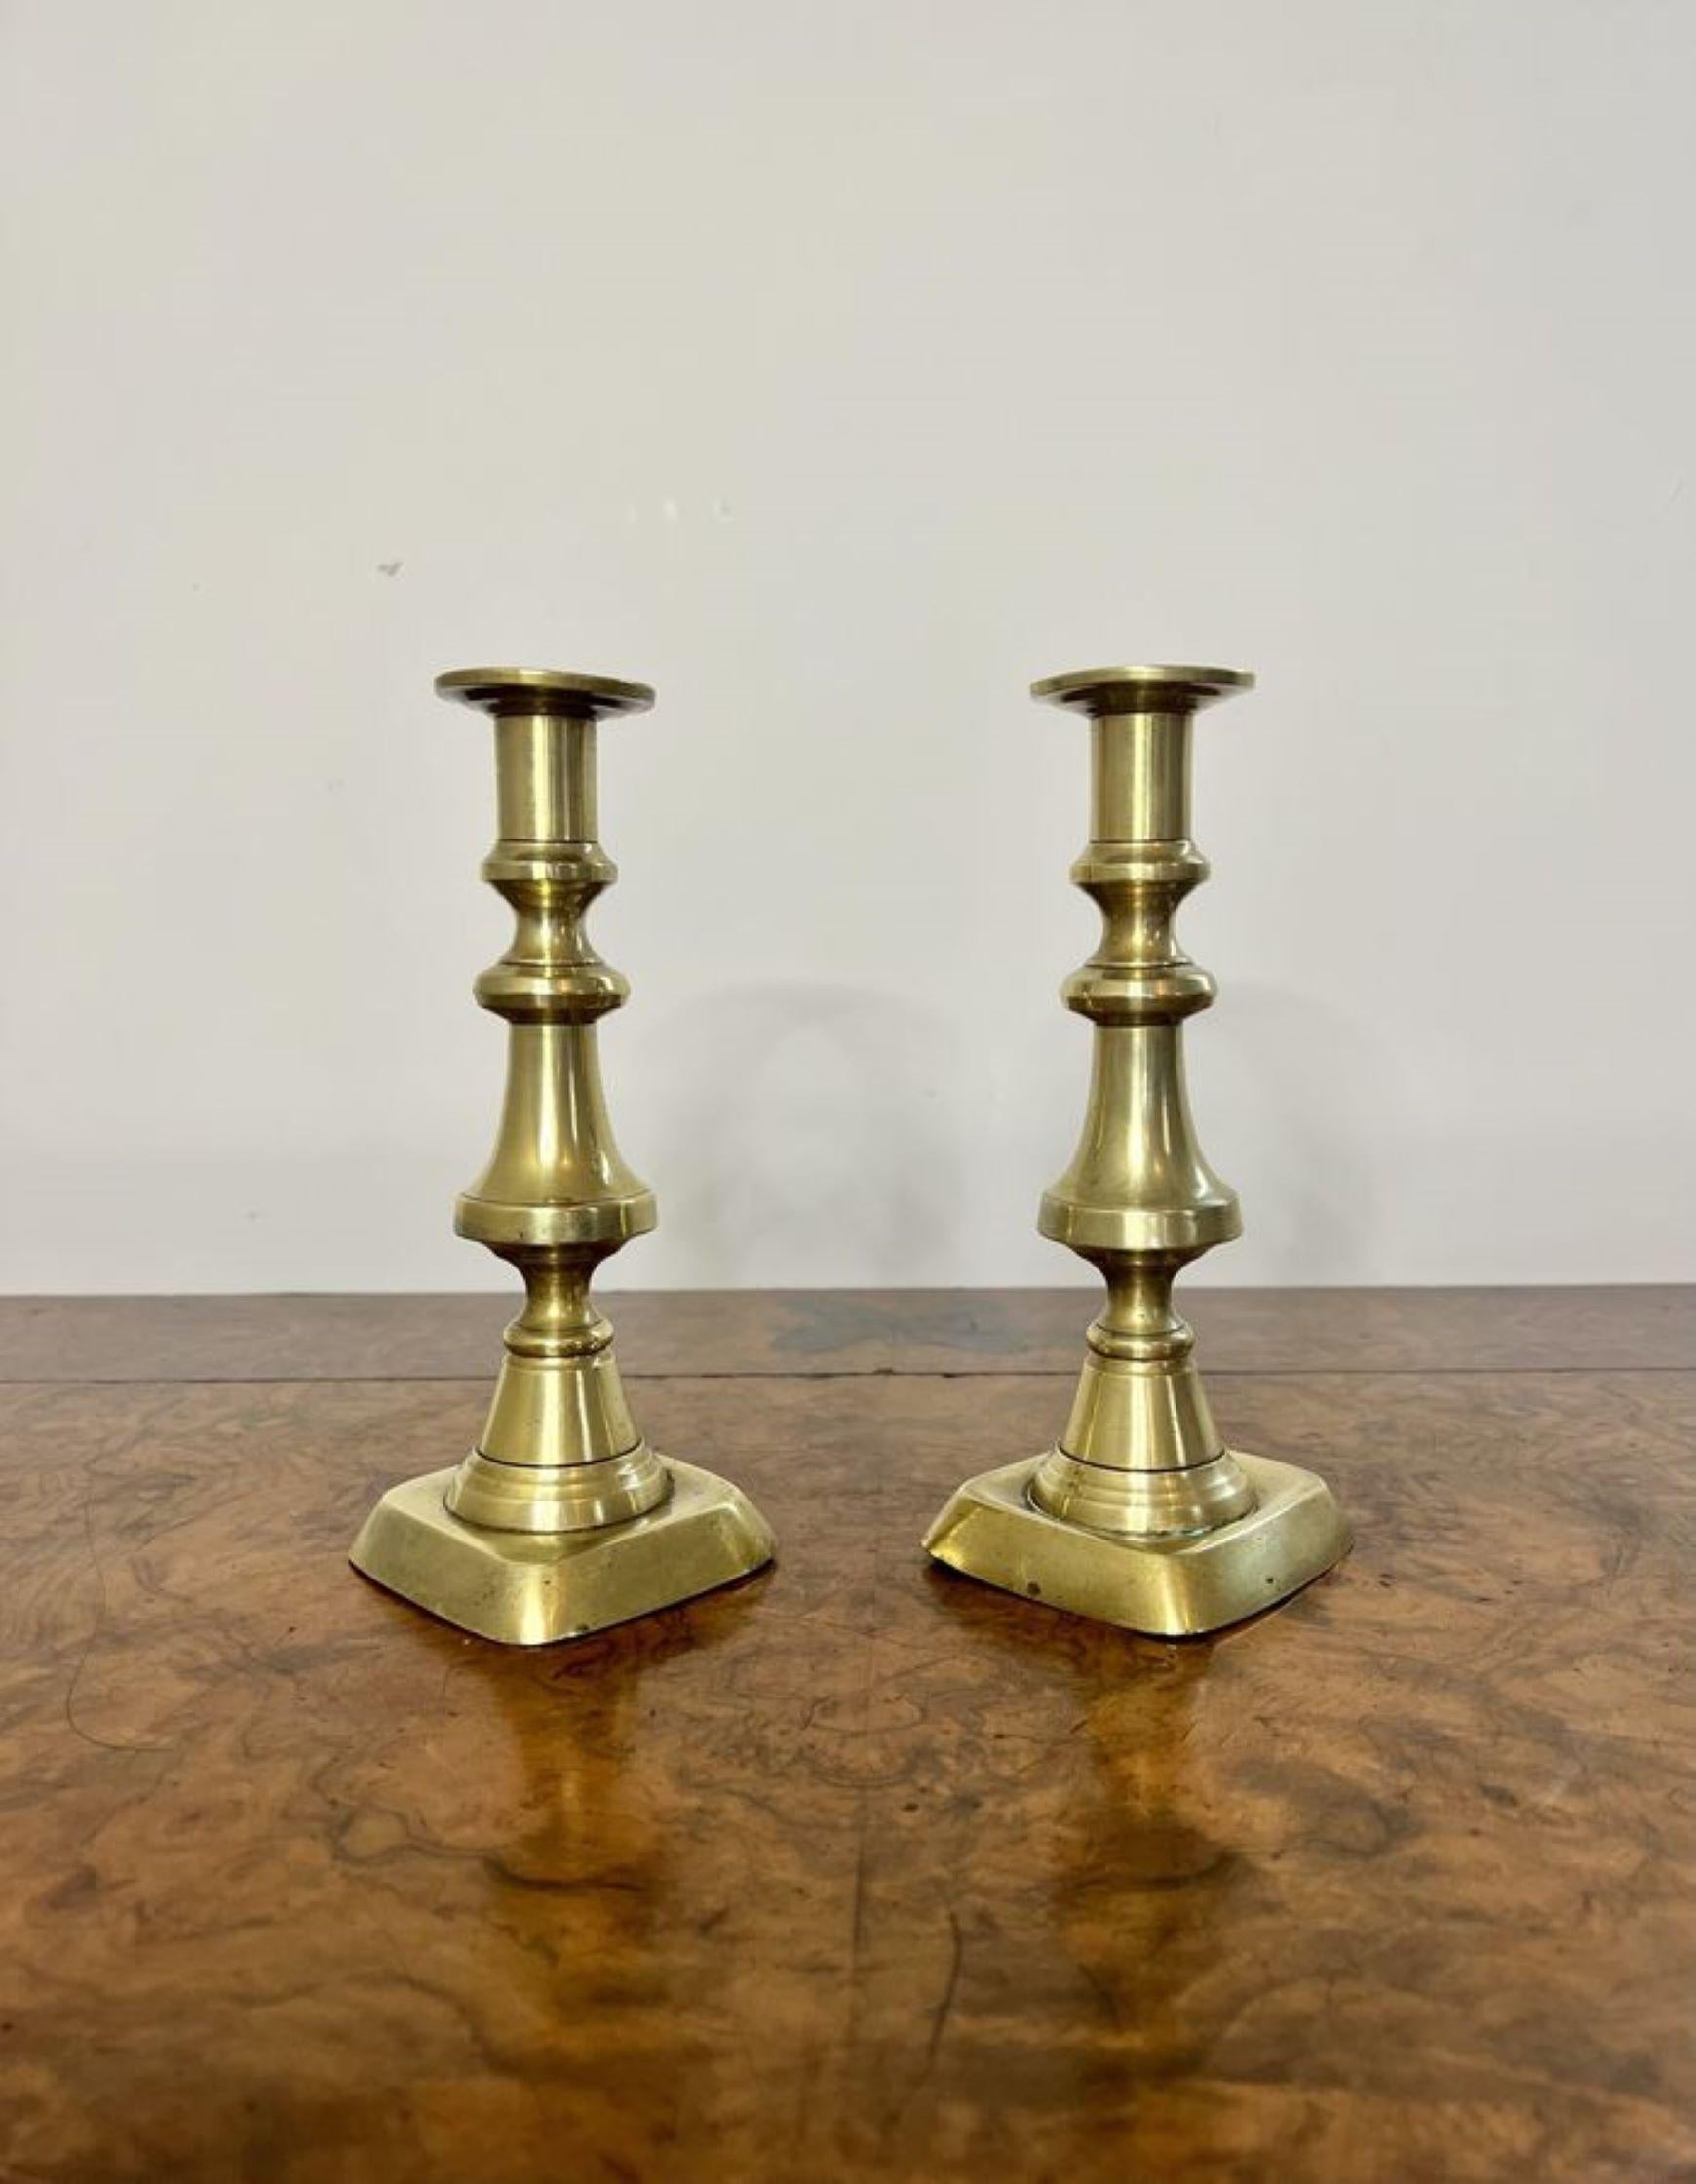 Hochwertiges Paar antiker viktorianischer Messing-Kerzenhalter mit einem hochwertigen Paar Messing-Kerzenhalter mit gedrehten, geformten Säulen, die auf quadratischen Basen stehen.

D. 1860